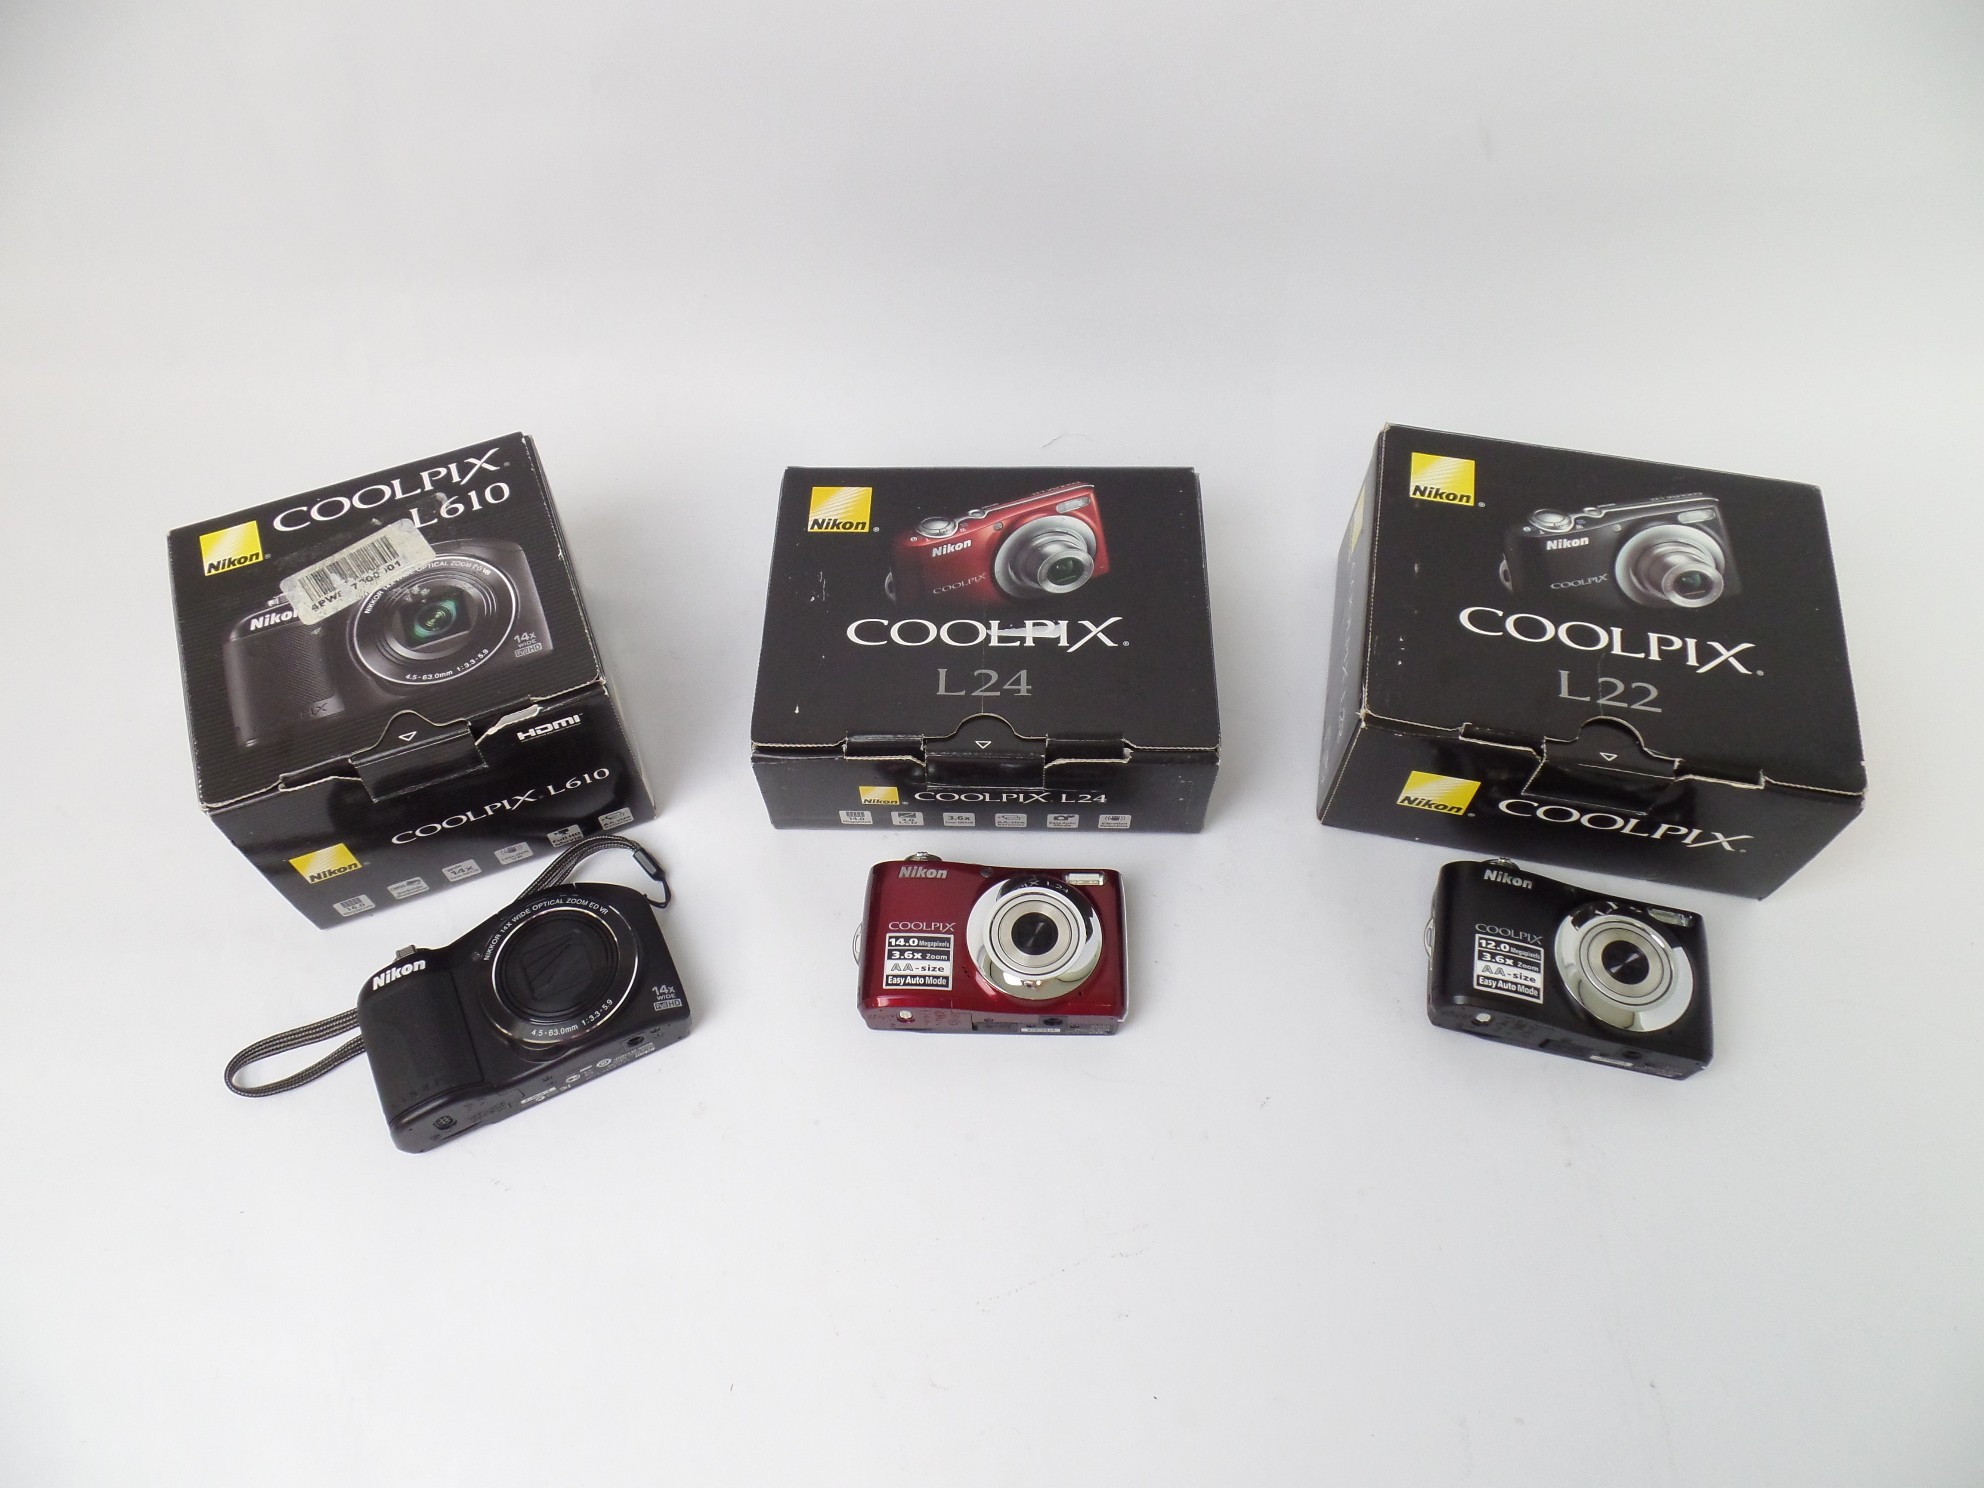 Read: defective Lot of 45 Cameras Samsung Kodak Nikon Fujifilm Canon Olympus